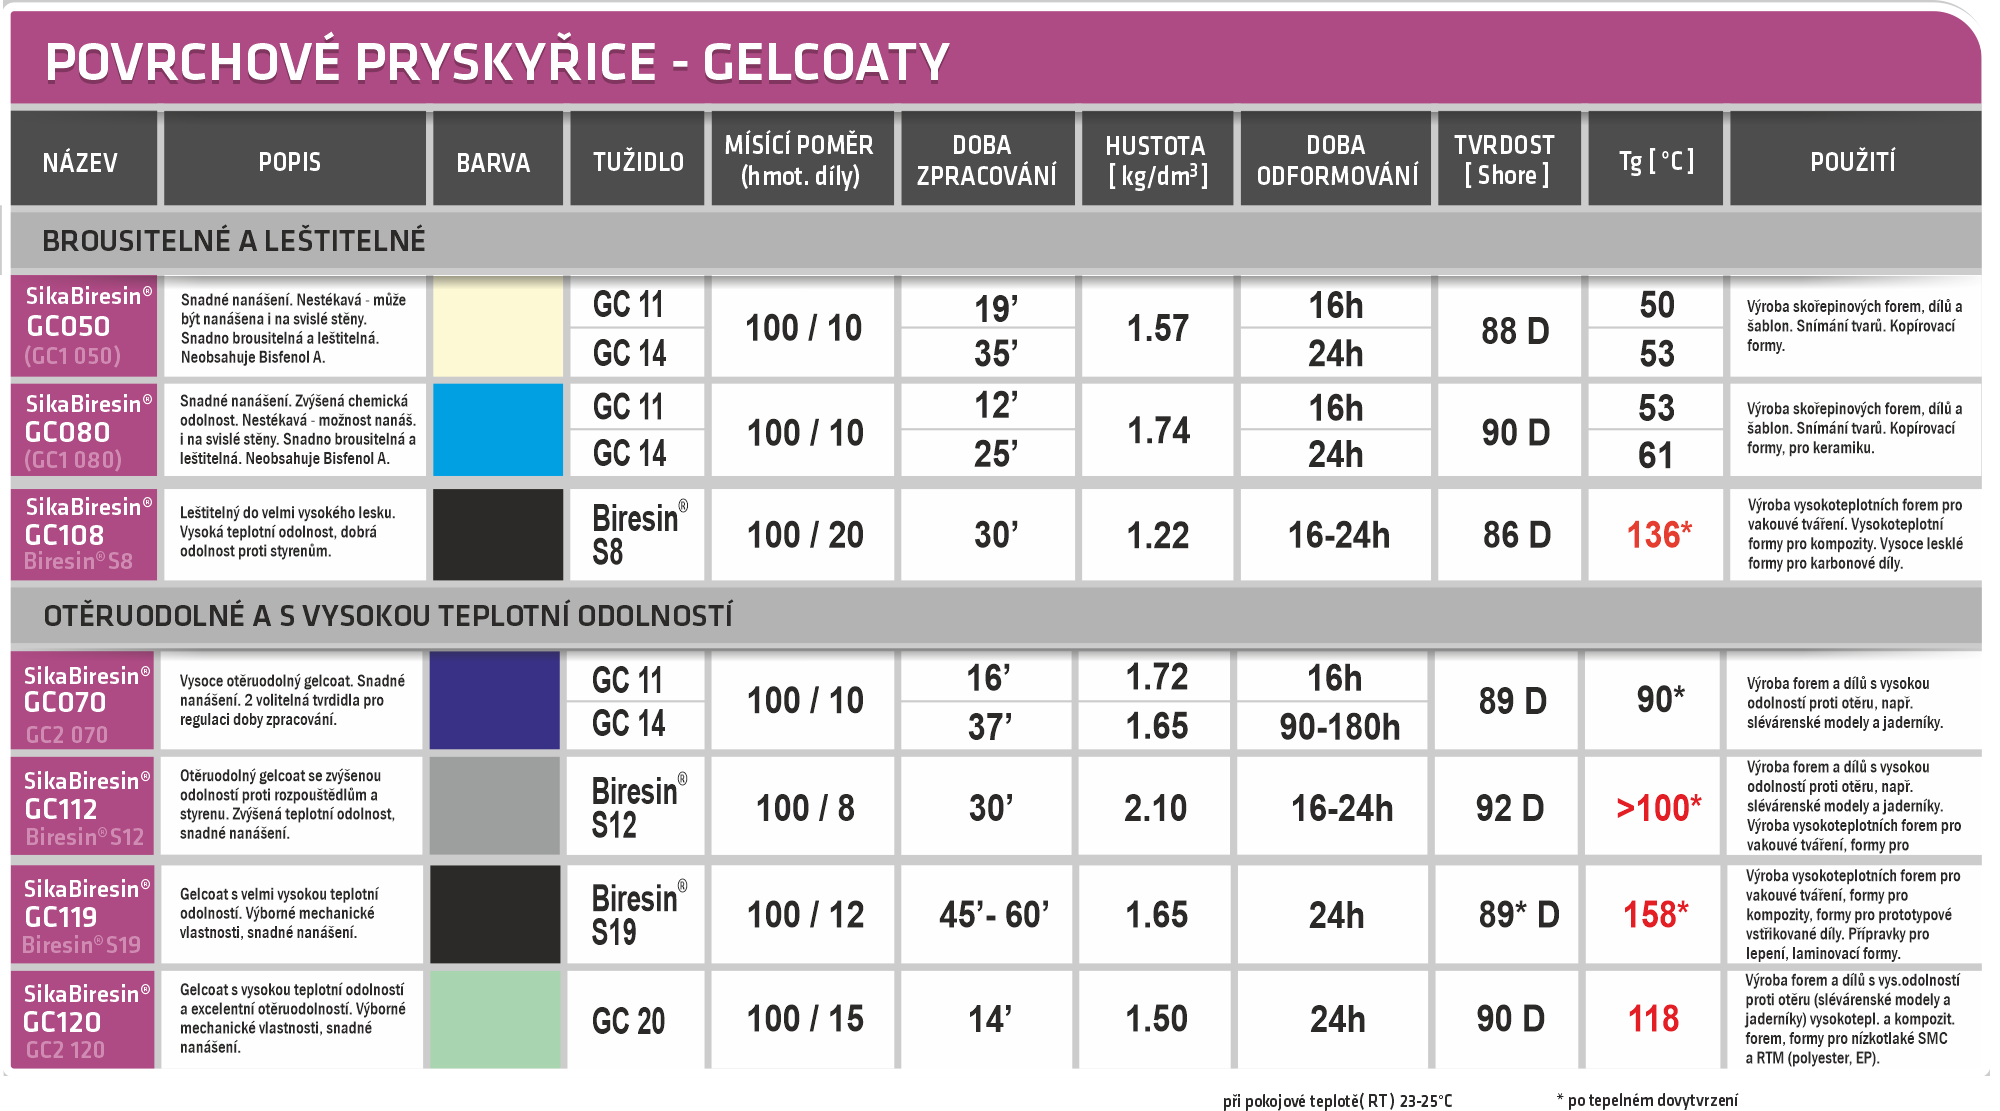 přehledná tabulka vlastností gelcoatů - povrchových pryskyřic Sika